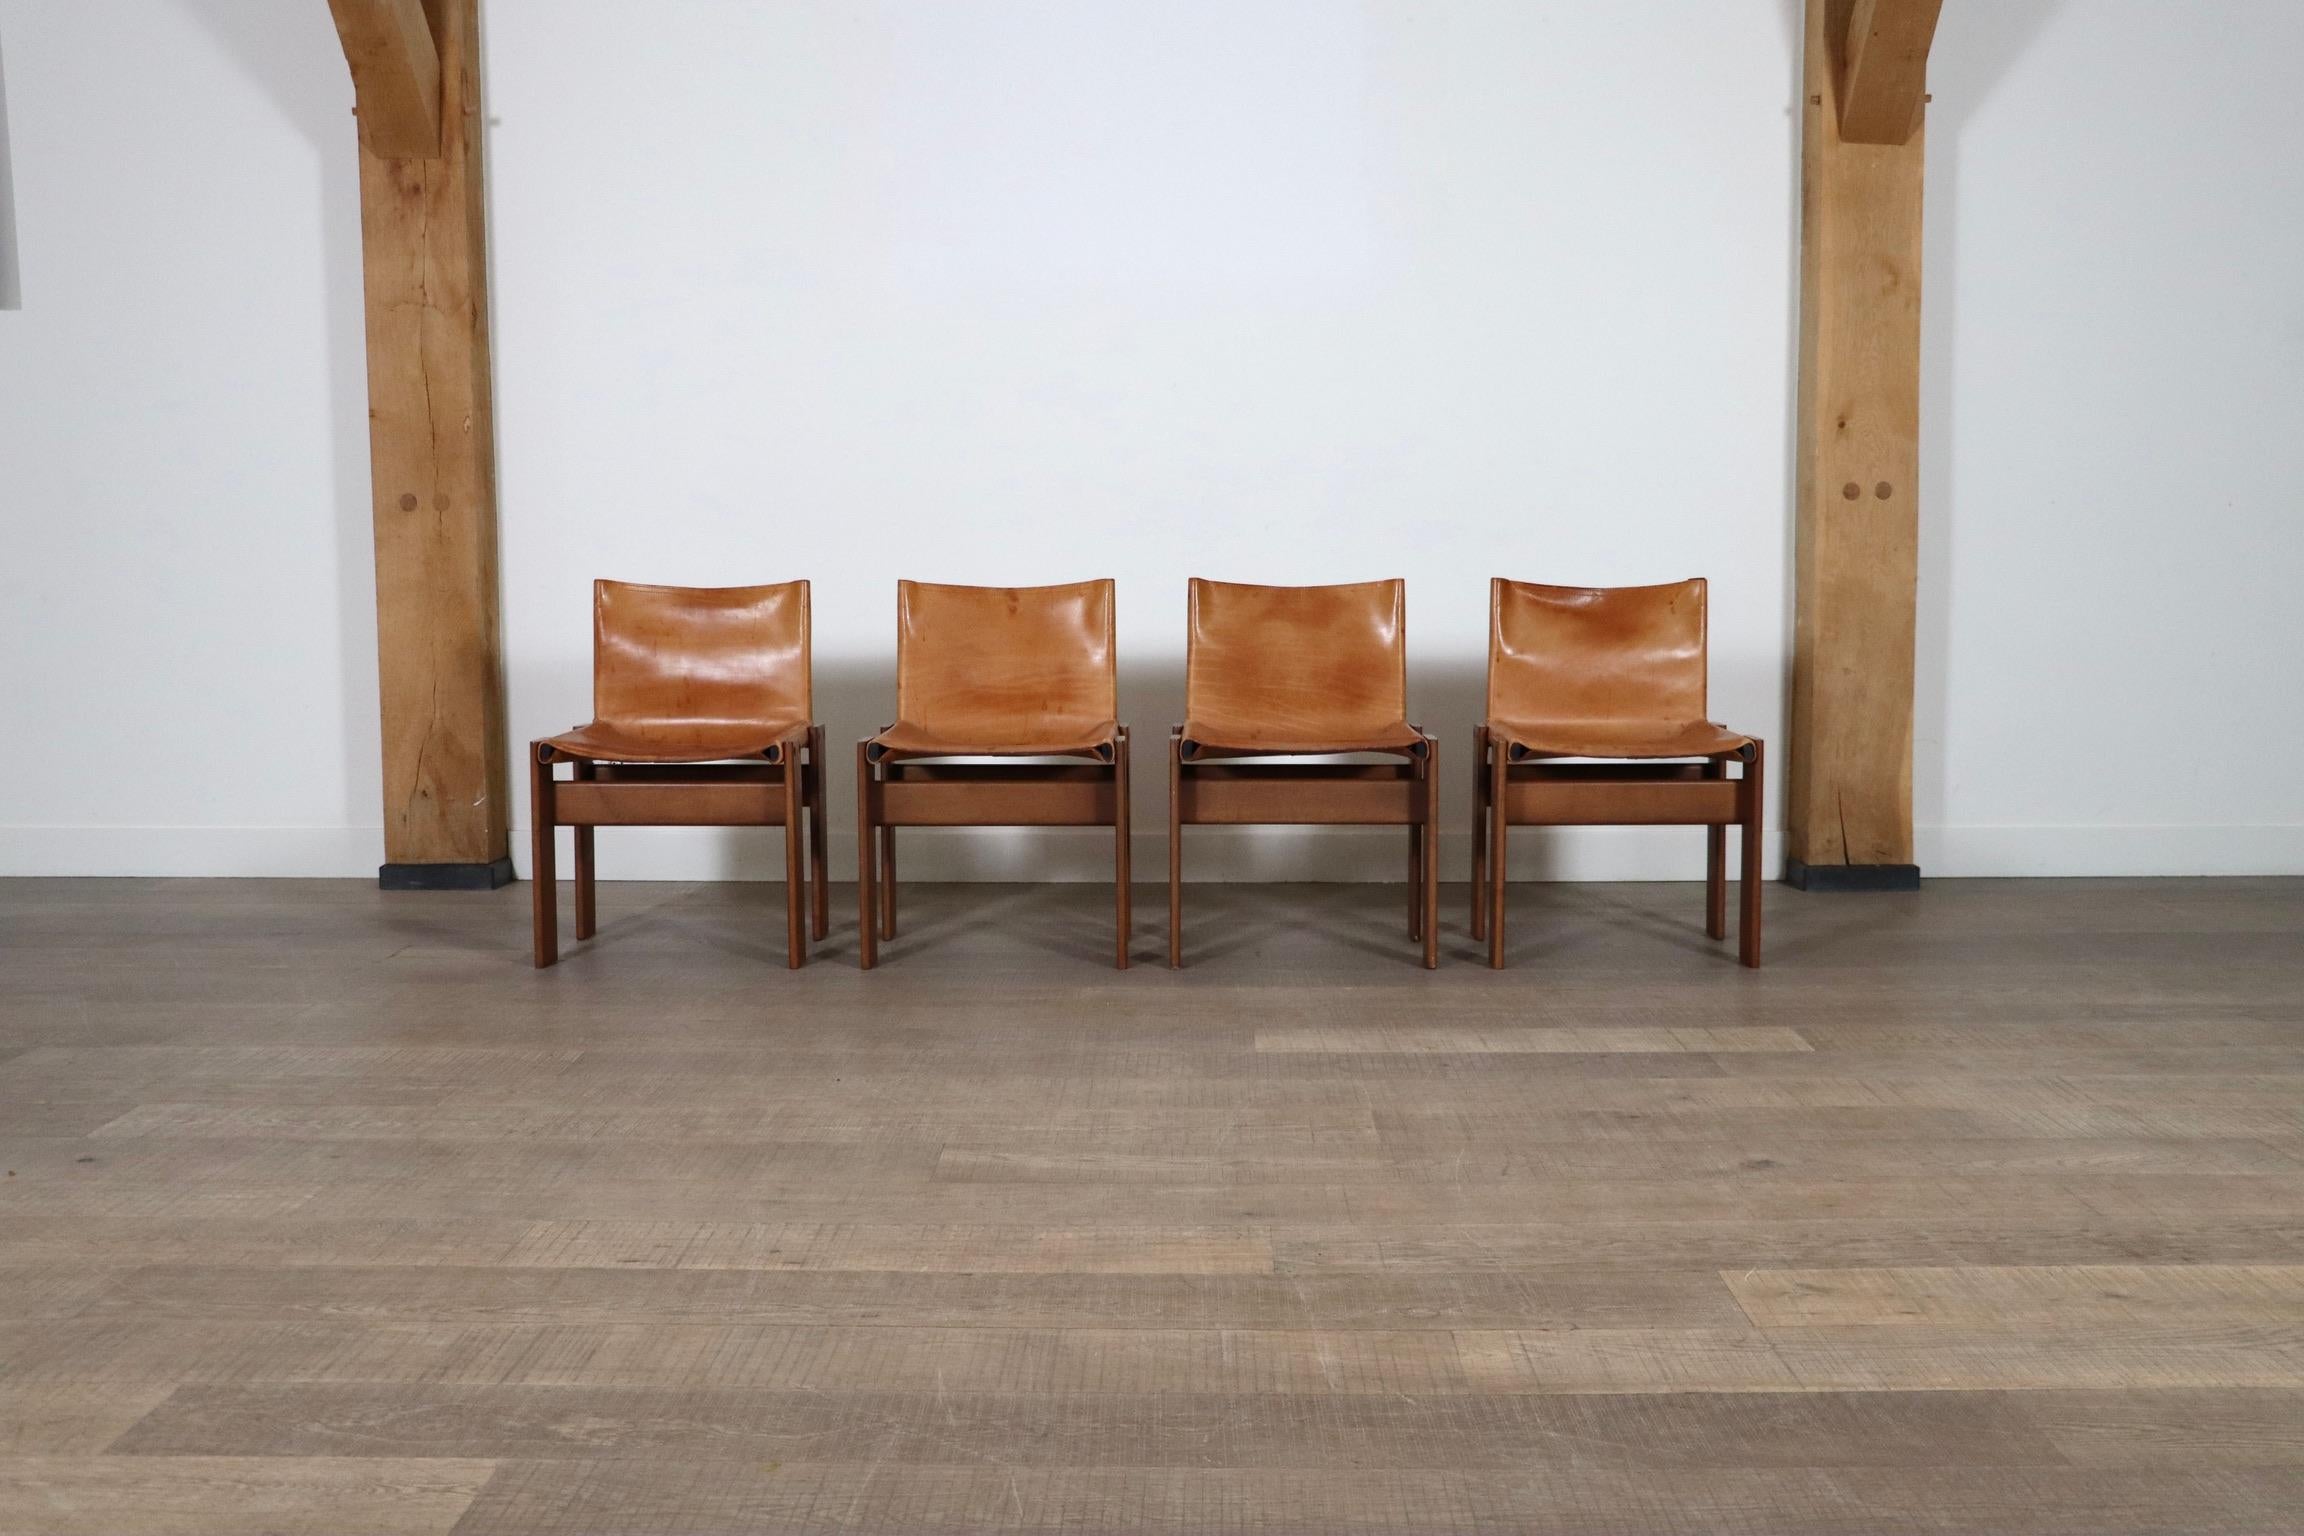 Fantastischer Satz von 4 'Monk' Stühlen, entworfen von Afra und Tobia Scarpa für Molteni, Italien 1974. Das schlichte Design, nach seinem Namen 